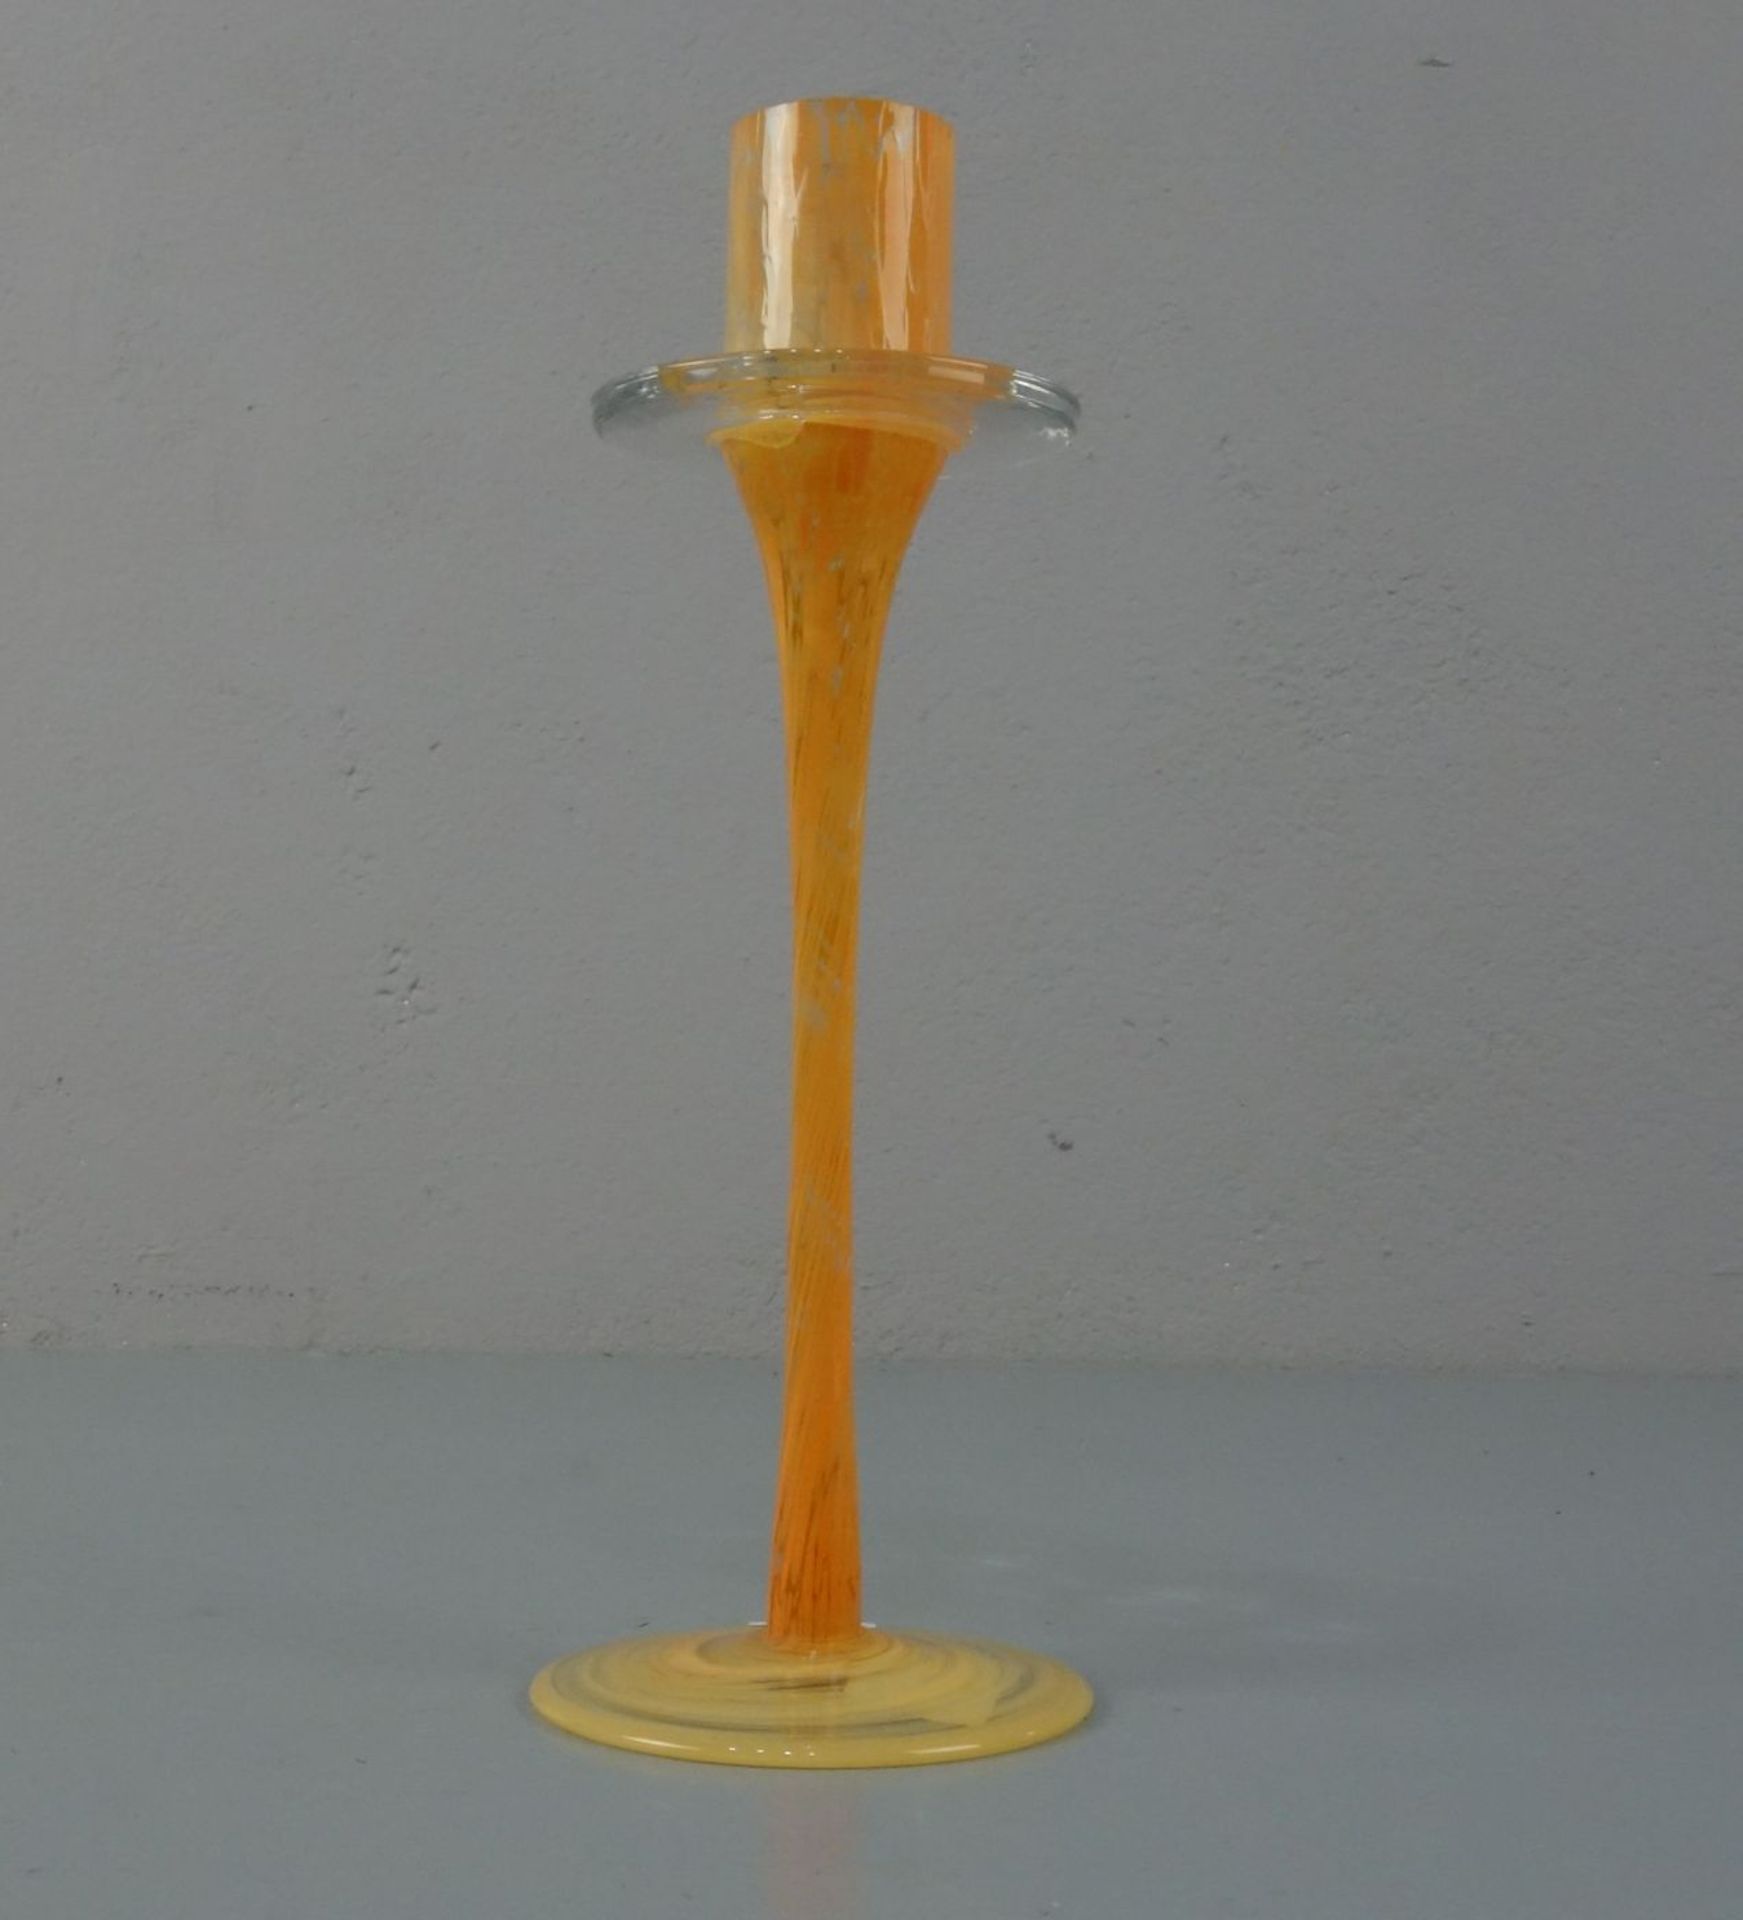 LEUCHTER / TISCHLEUCHTER / candle stand, Klarglas mit orangefarbenen Pulverauf- und - - Bild 2 aus 3